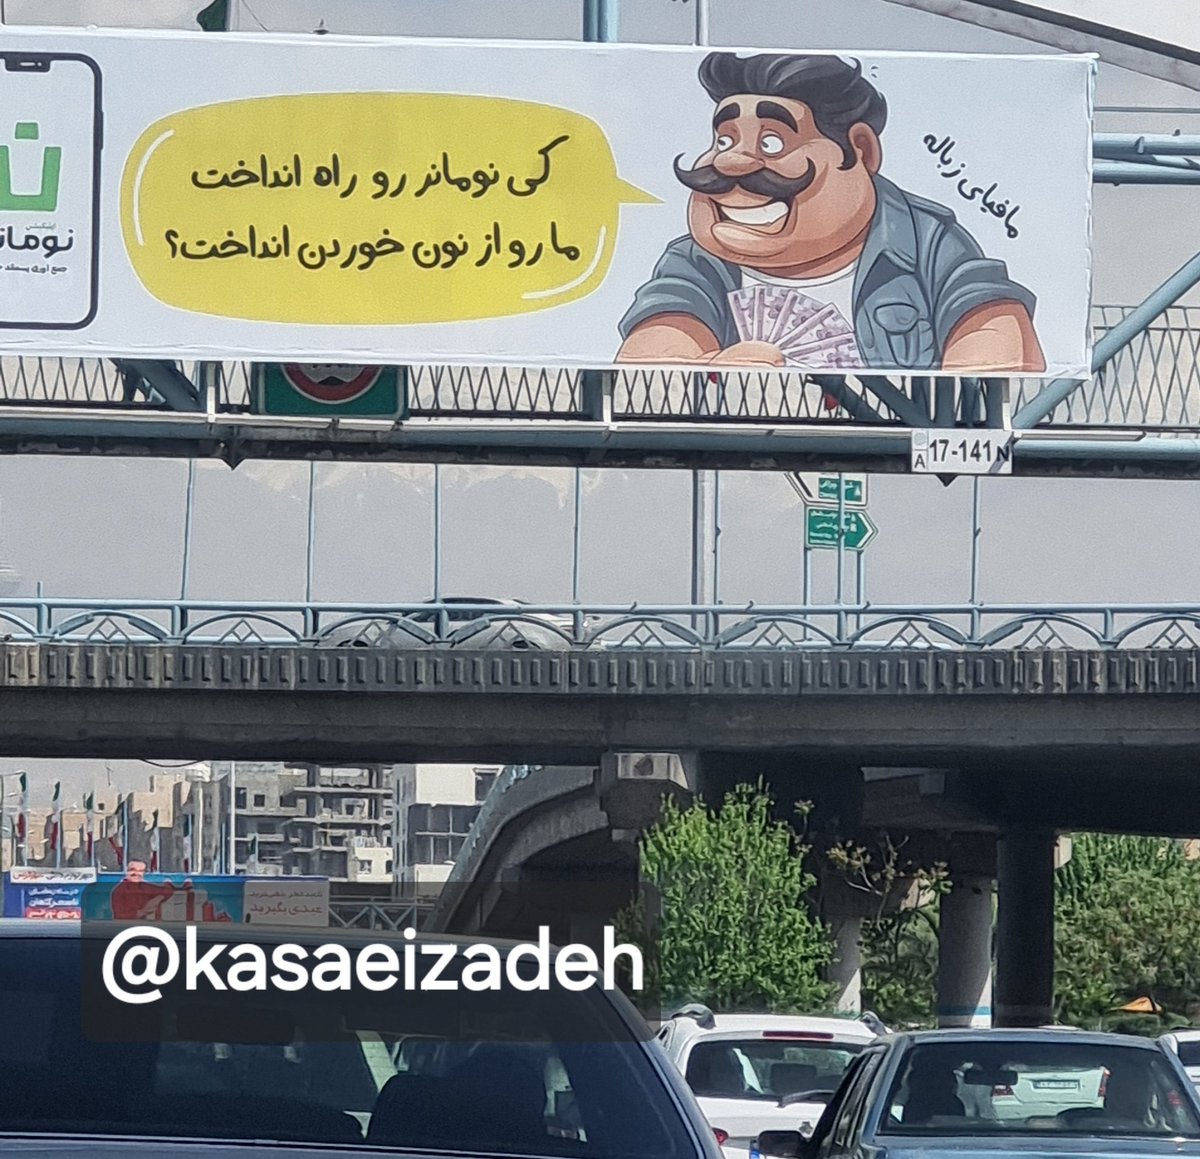  بنر نکته‌داری که در سطح شهر تهران نصب شد+عکس